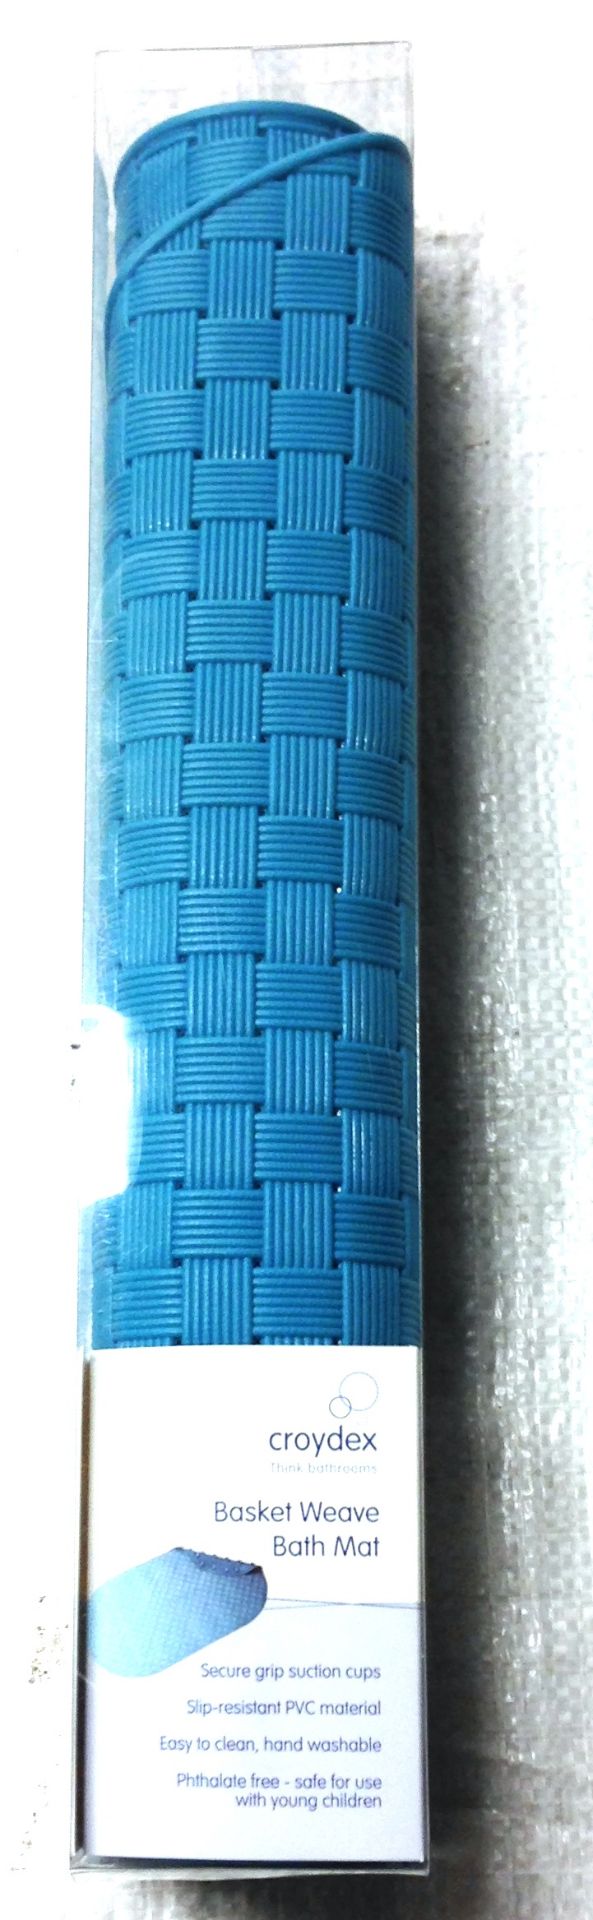 12 x Blue Croydex PVC basket weave bath mats 39 x 69cm with suction cups